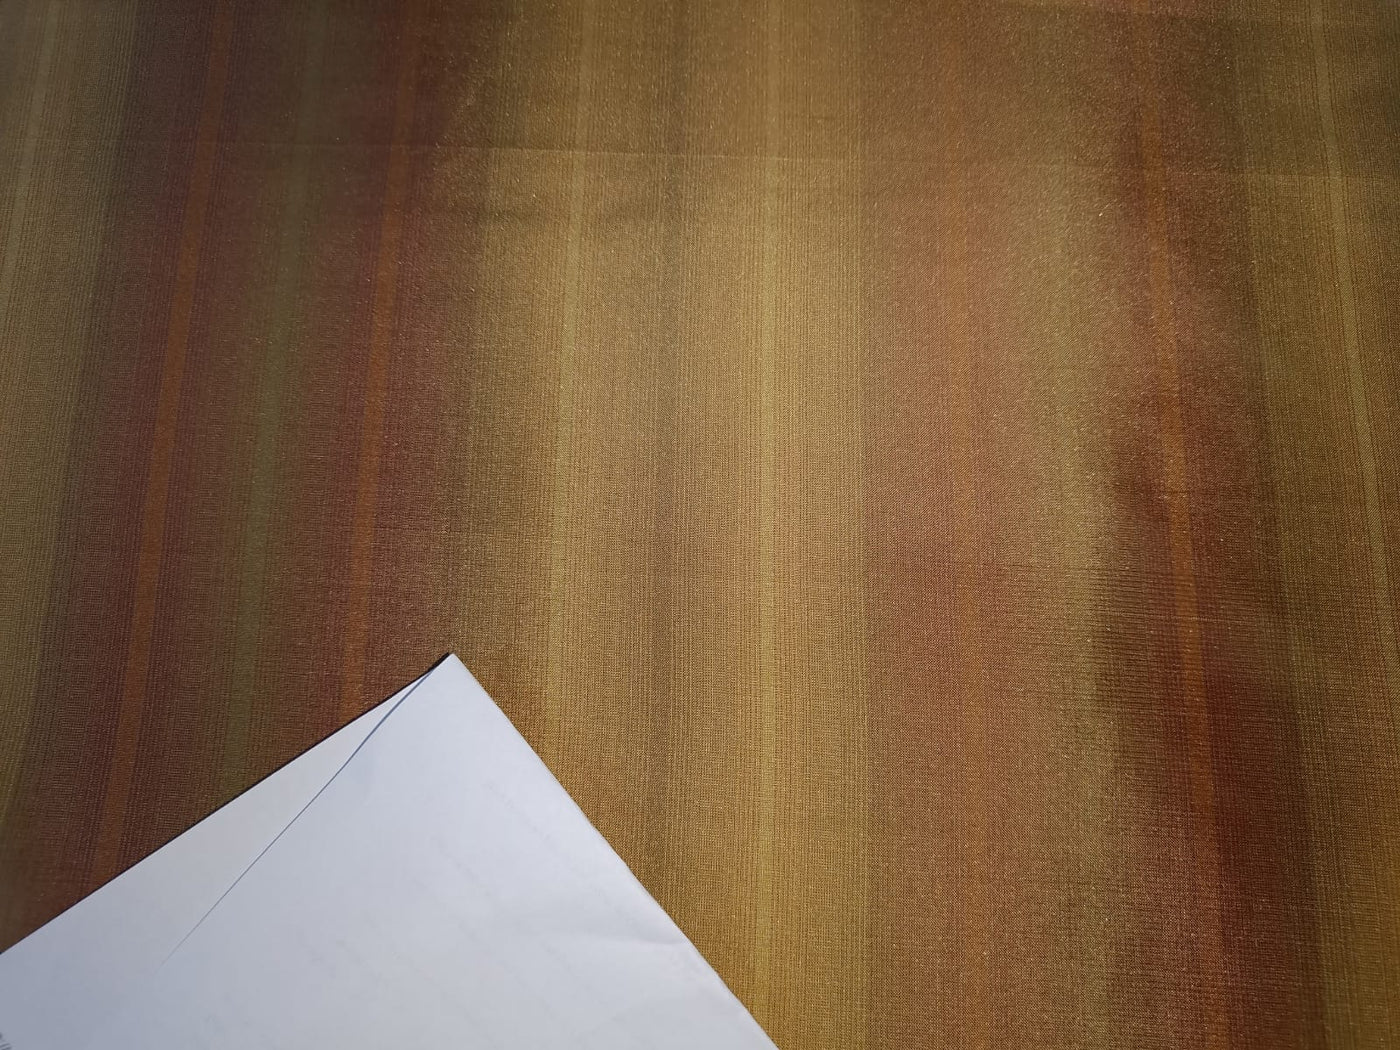 100%Pure Silk Taffeta Stripe Fabric Old Gold x Brown TAF#S139[6]